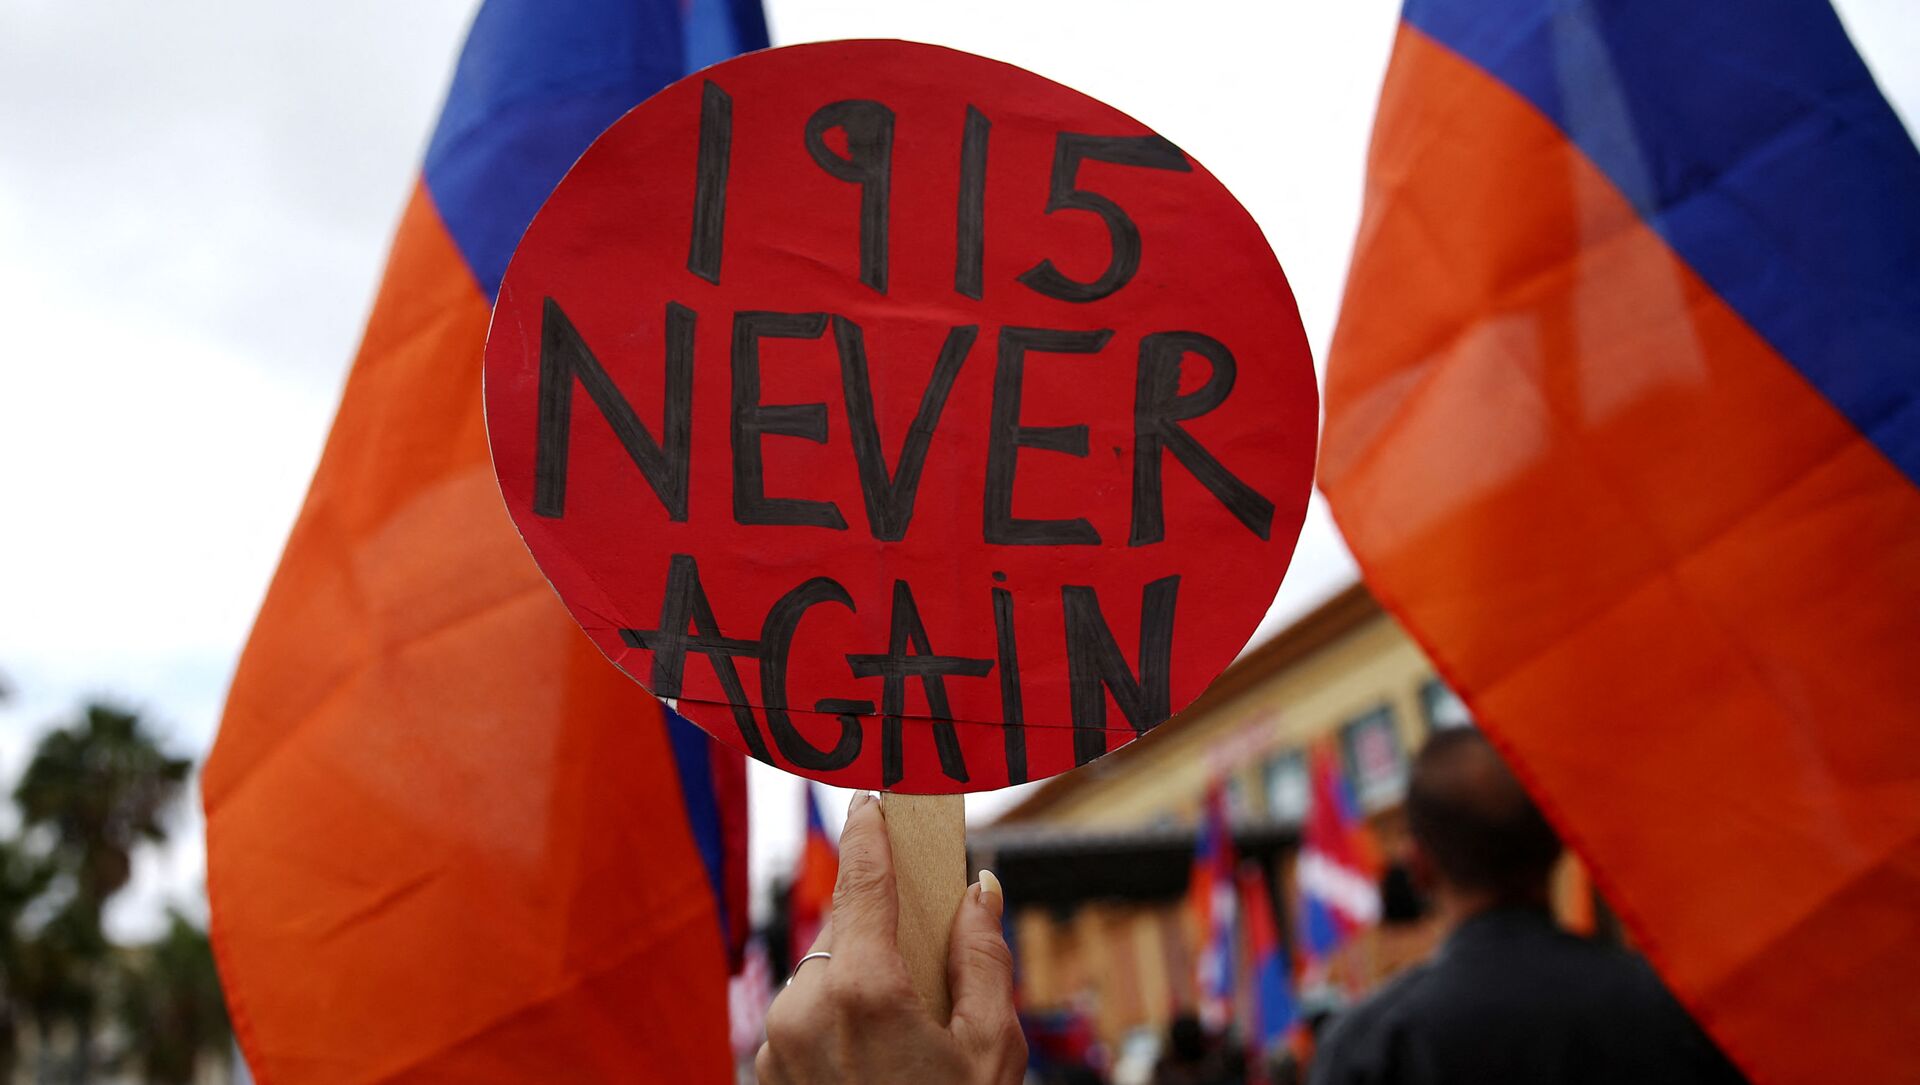 Transparent Nikad više 1915 na okupljanju u znak podrške izjavi Džozefa bajdena da je nad Jermenima 1915. počinjen genocid. - Sputnik Srbija, 1920, 26.04.2021